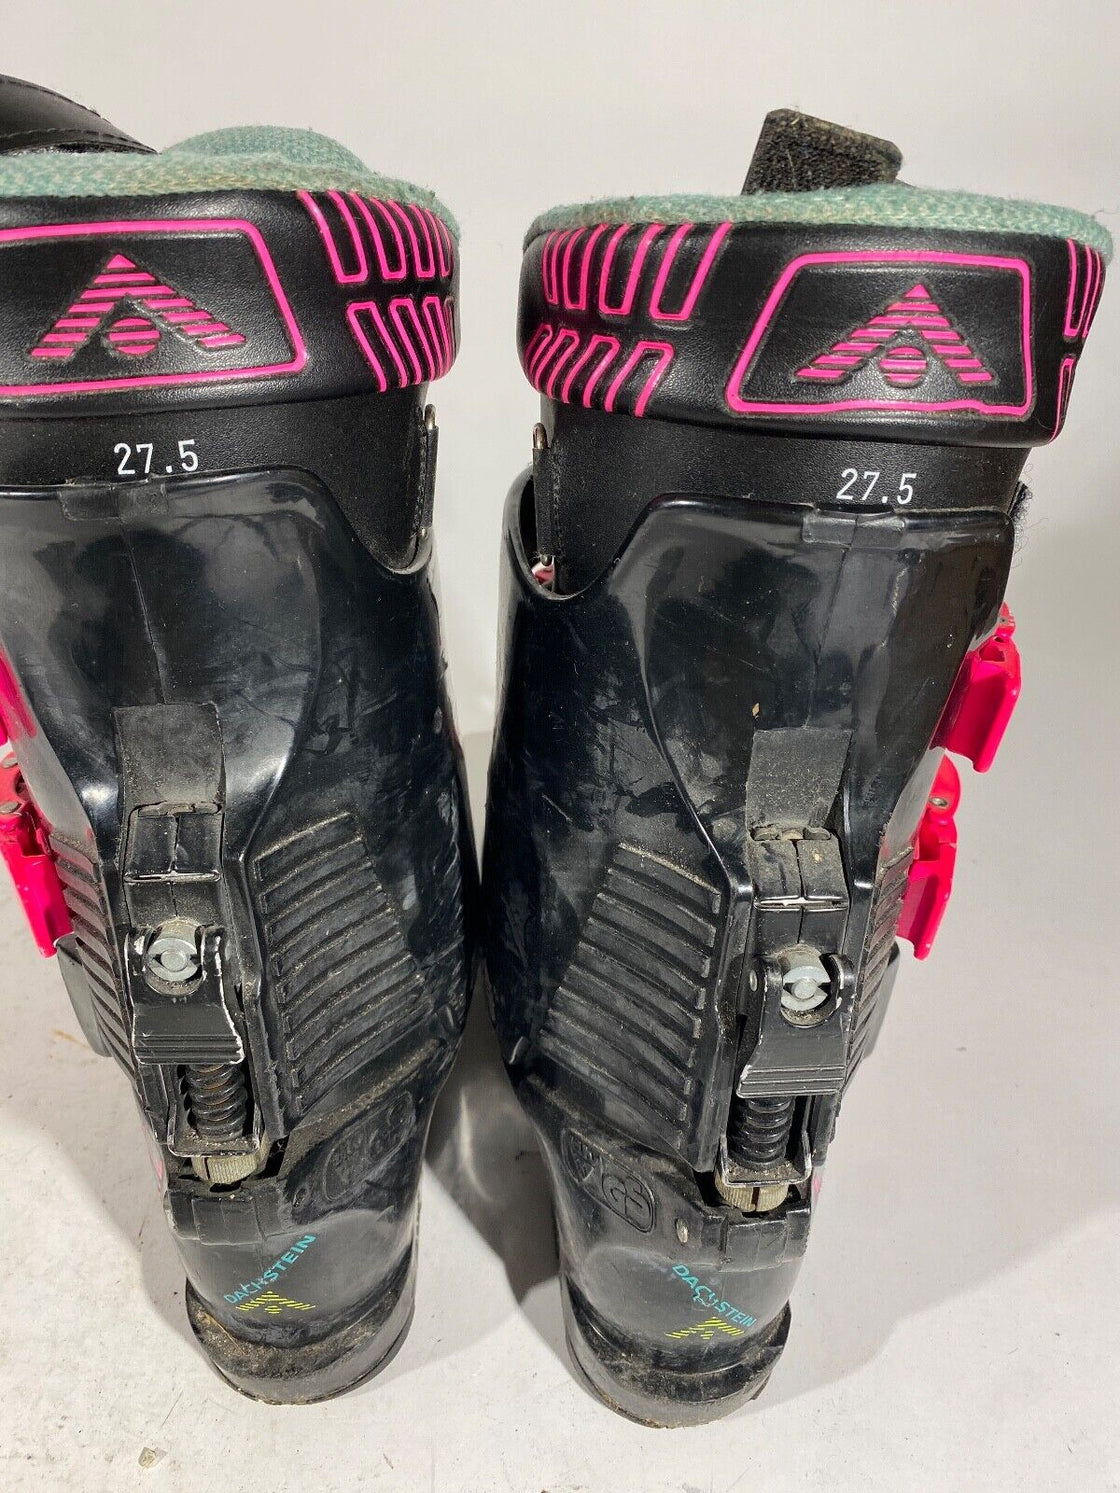 DACHSTEIN Vintage Alpine Ski Boots Size Mondo 270 mm, Outer Sole 310 mm